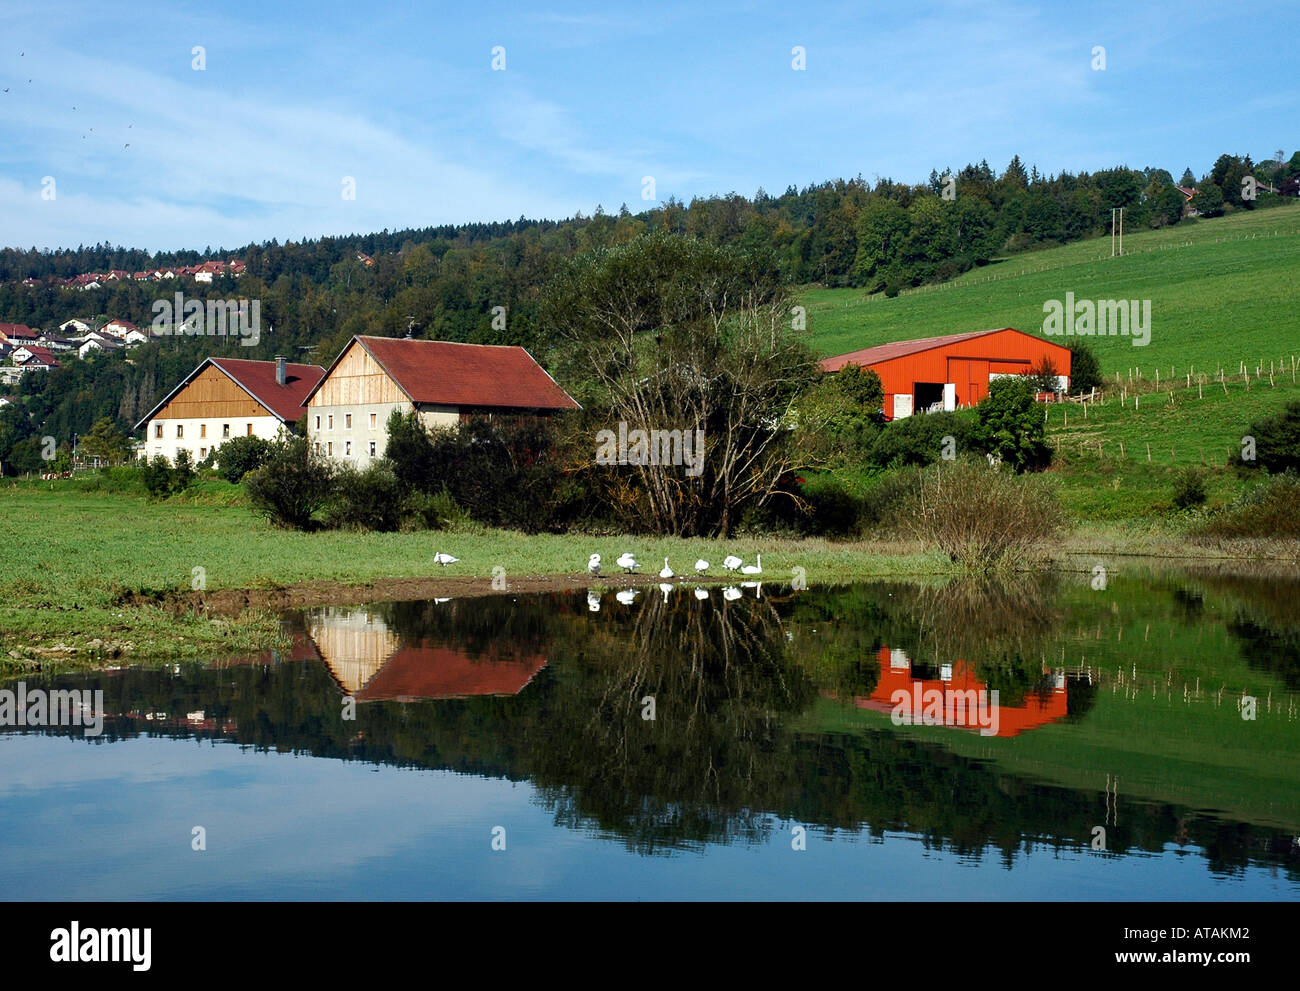 Comtois tradizionali case coloniche in Francia la regione del Giura sulle rive del fiume Doubs dove si affaccia la Svizzera Foto Stock